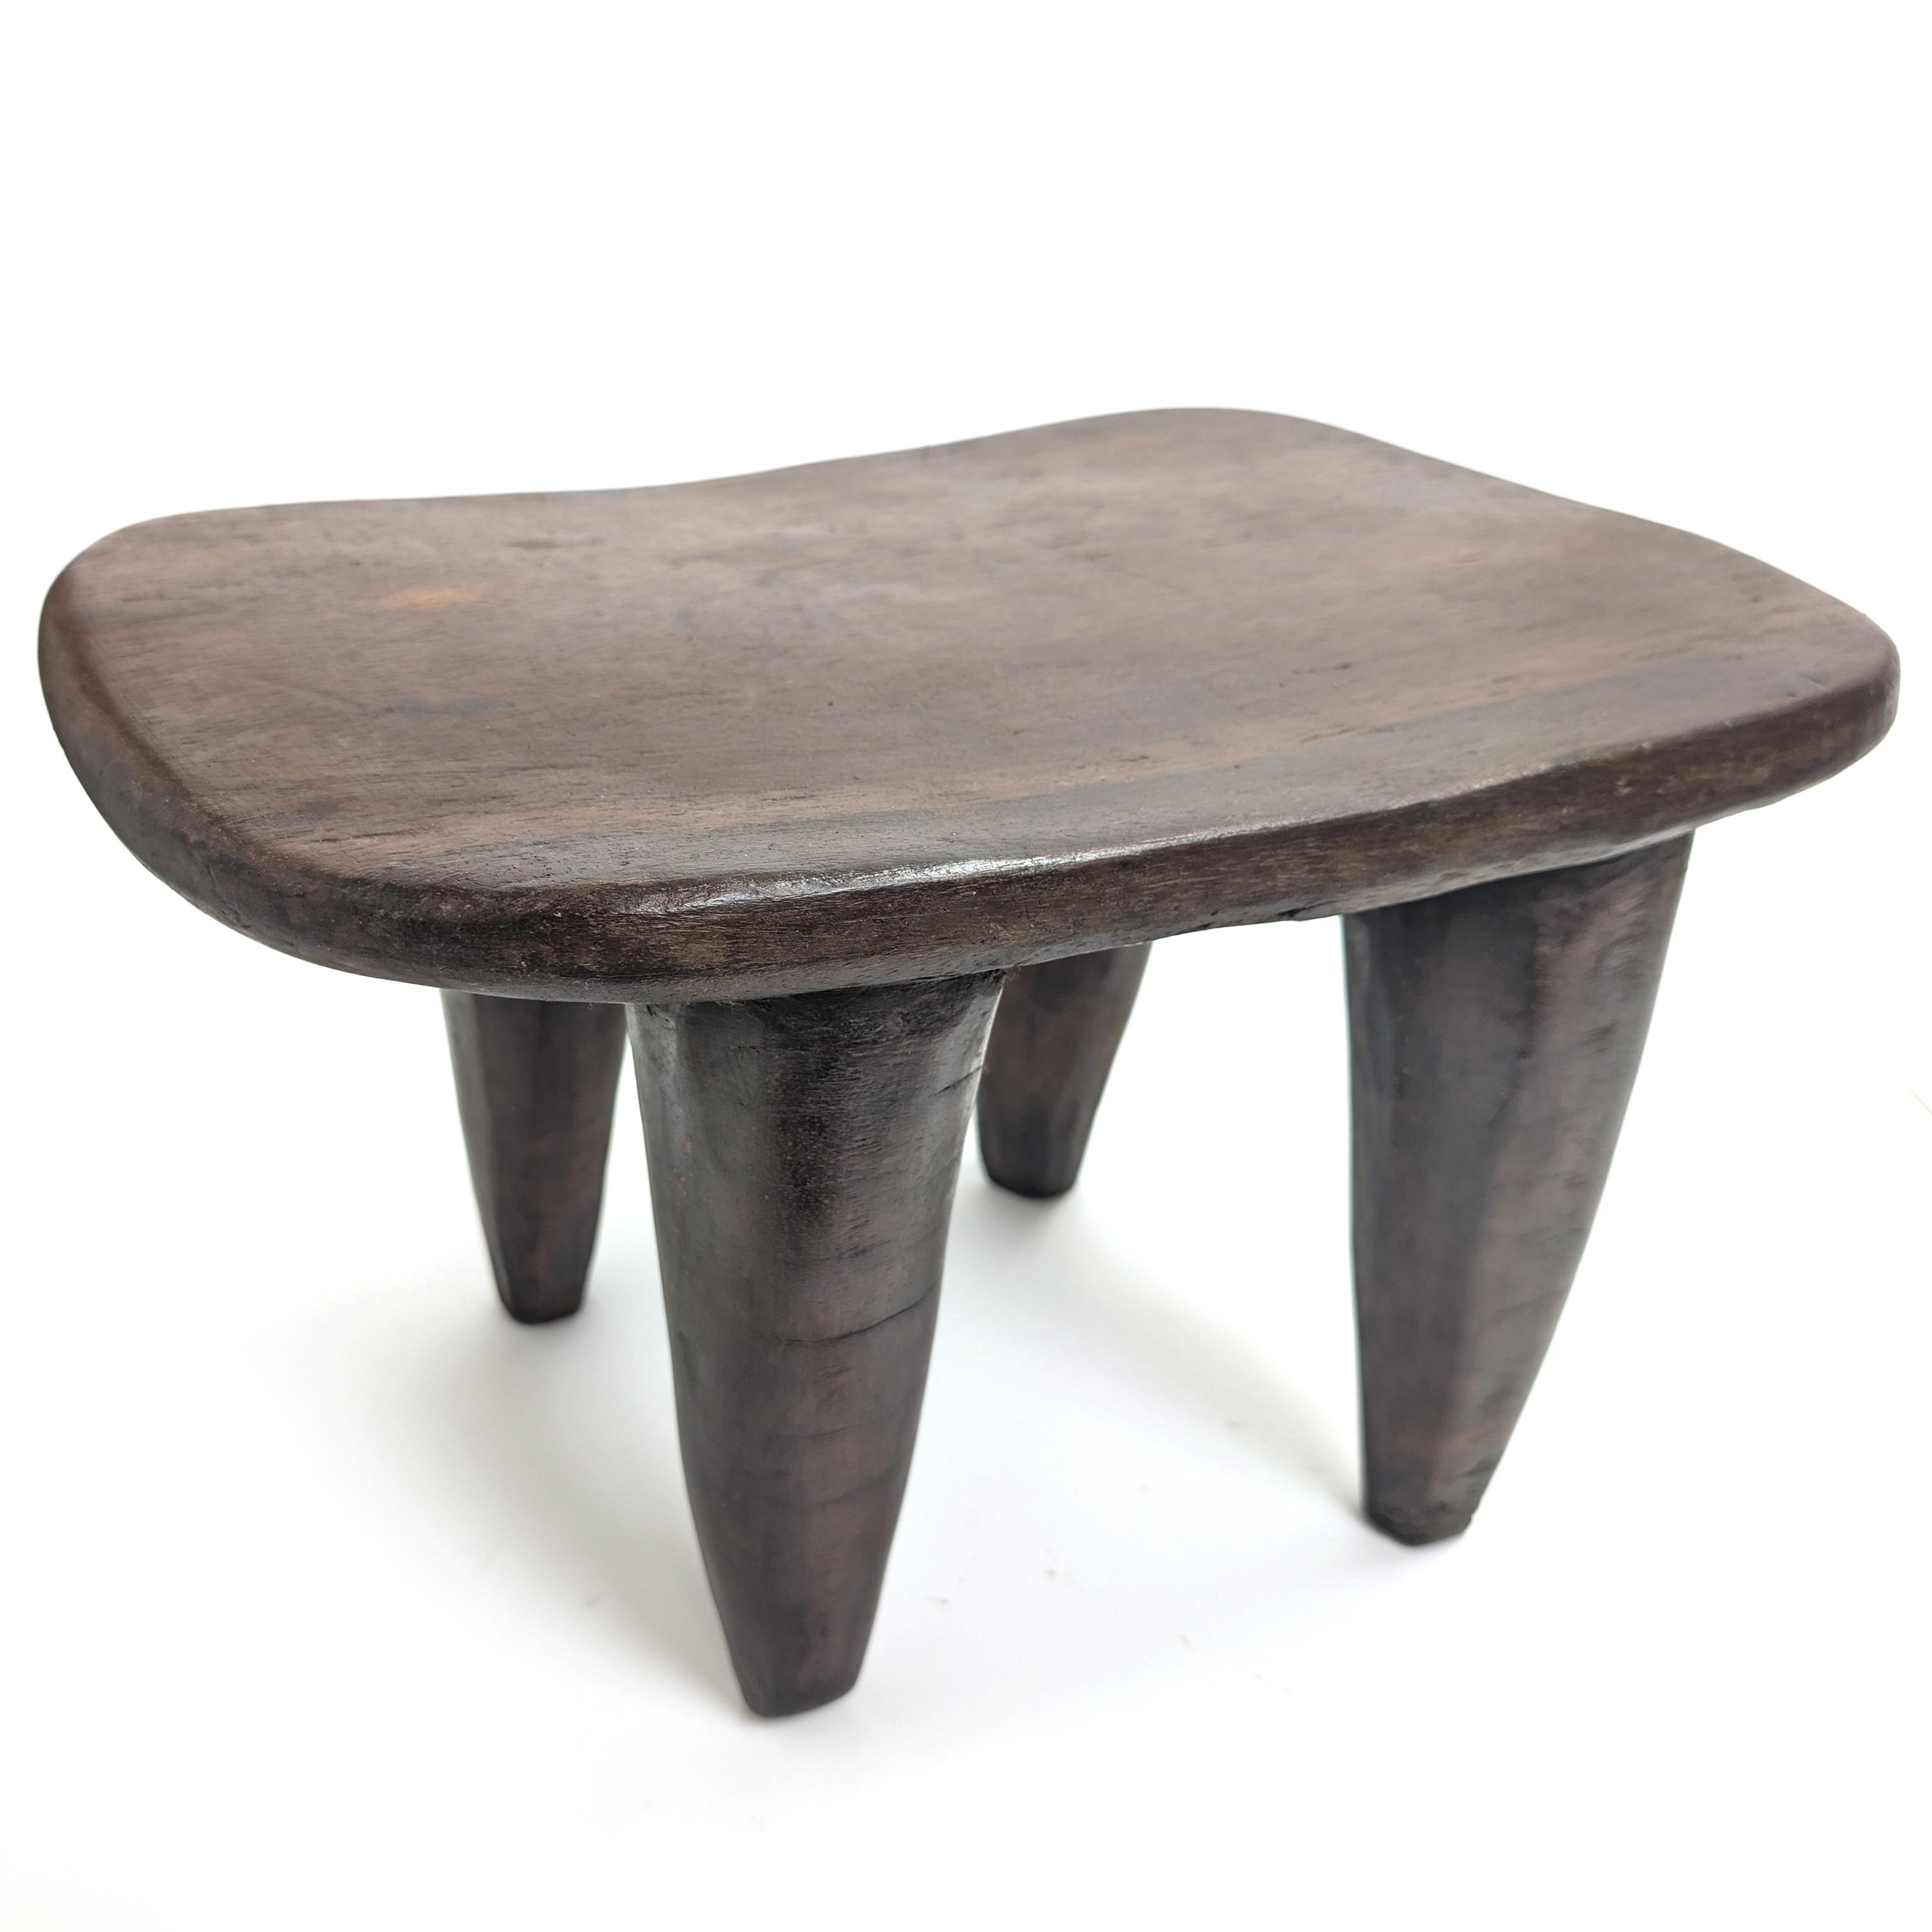 ロビ族 アフリカ スツール 椅子 セヌフォ アフリカンスツール - 家具